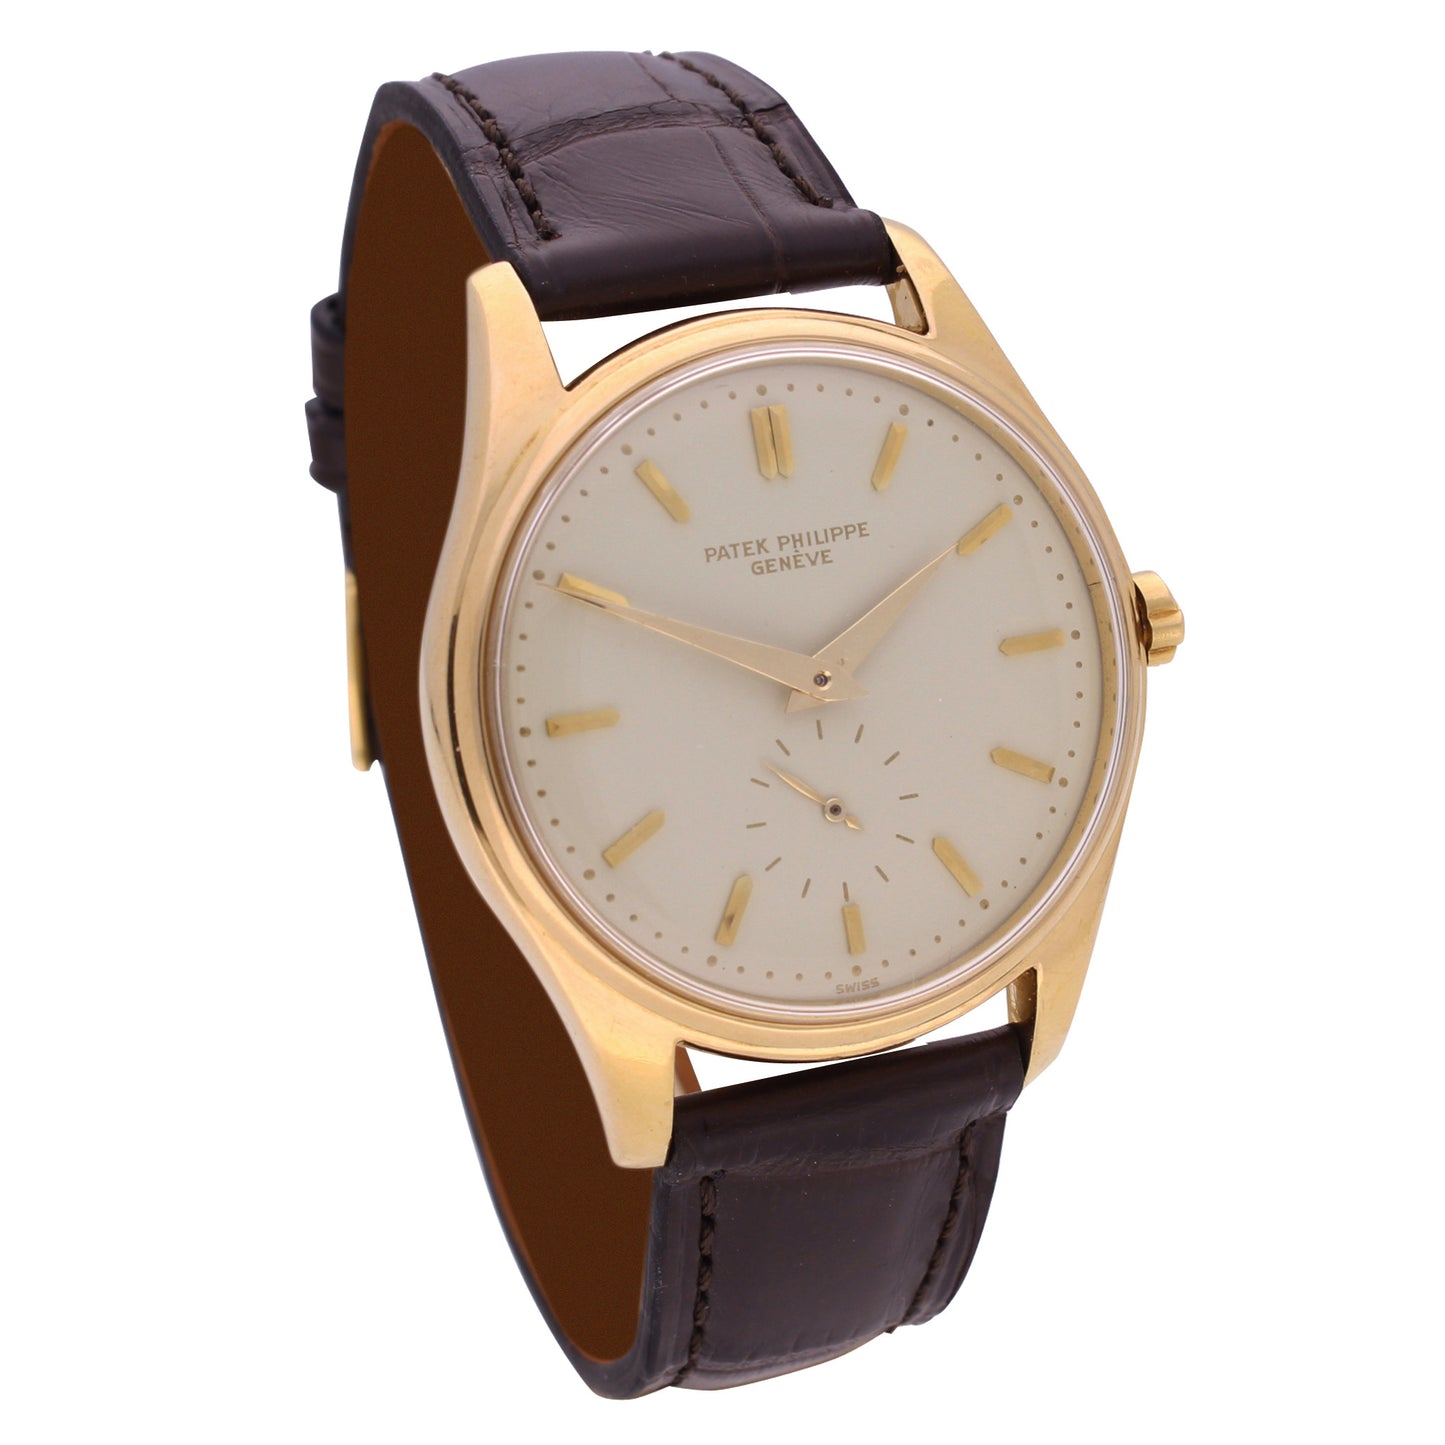 18ct yellow gold, reference 2526 Calatrava automatic wristwatch. Made 1953